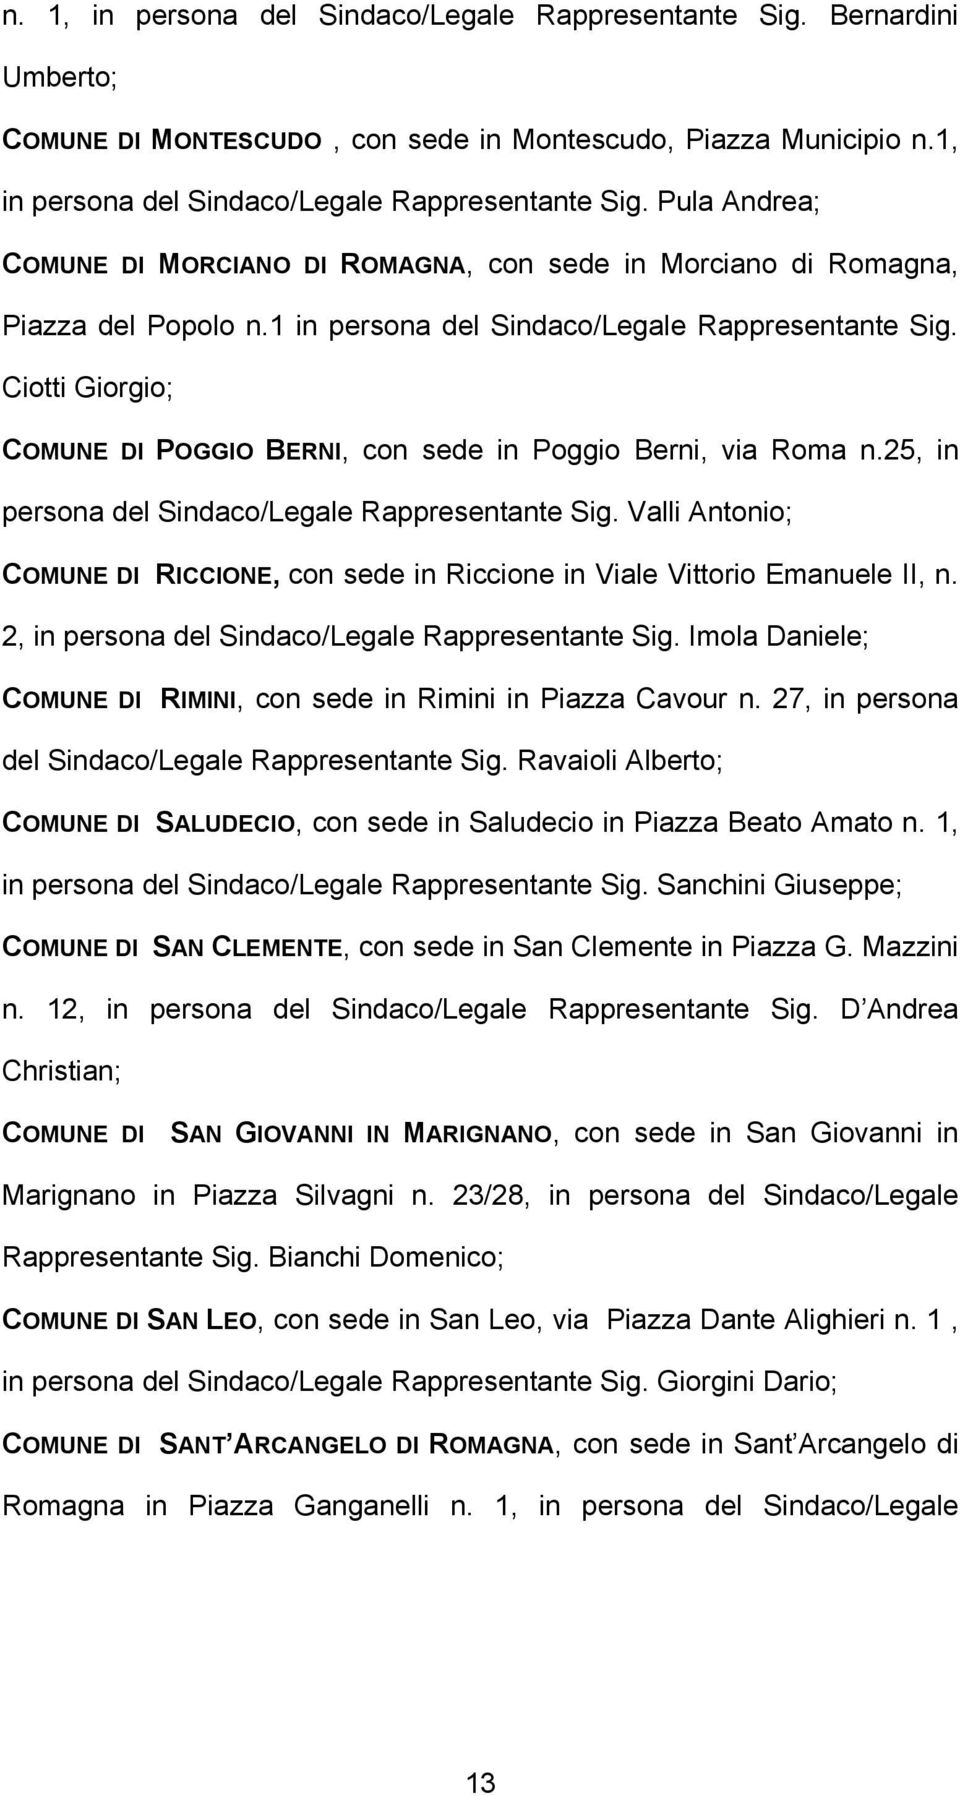 Valli Antonio; COMUNE DI RICCIONE, con sede in Riccione in Viale Vittorio Emanuele II, n. 2, in persona del Sindaco/Legale Rappresentante Sig.